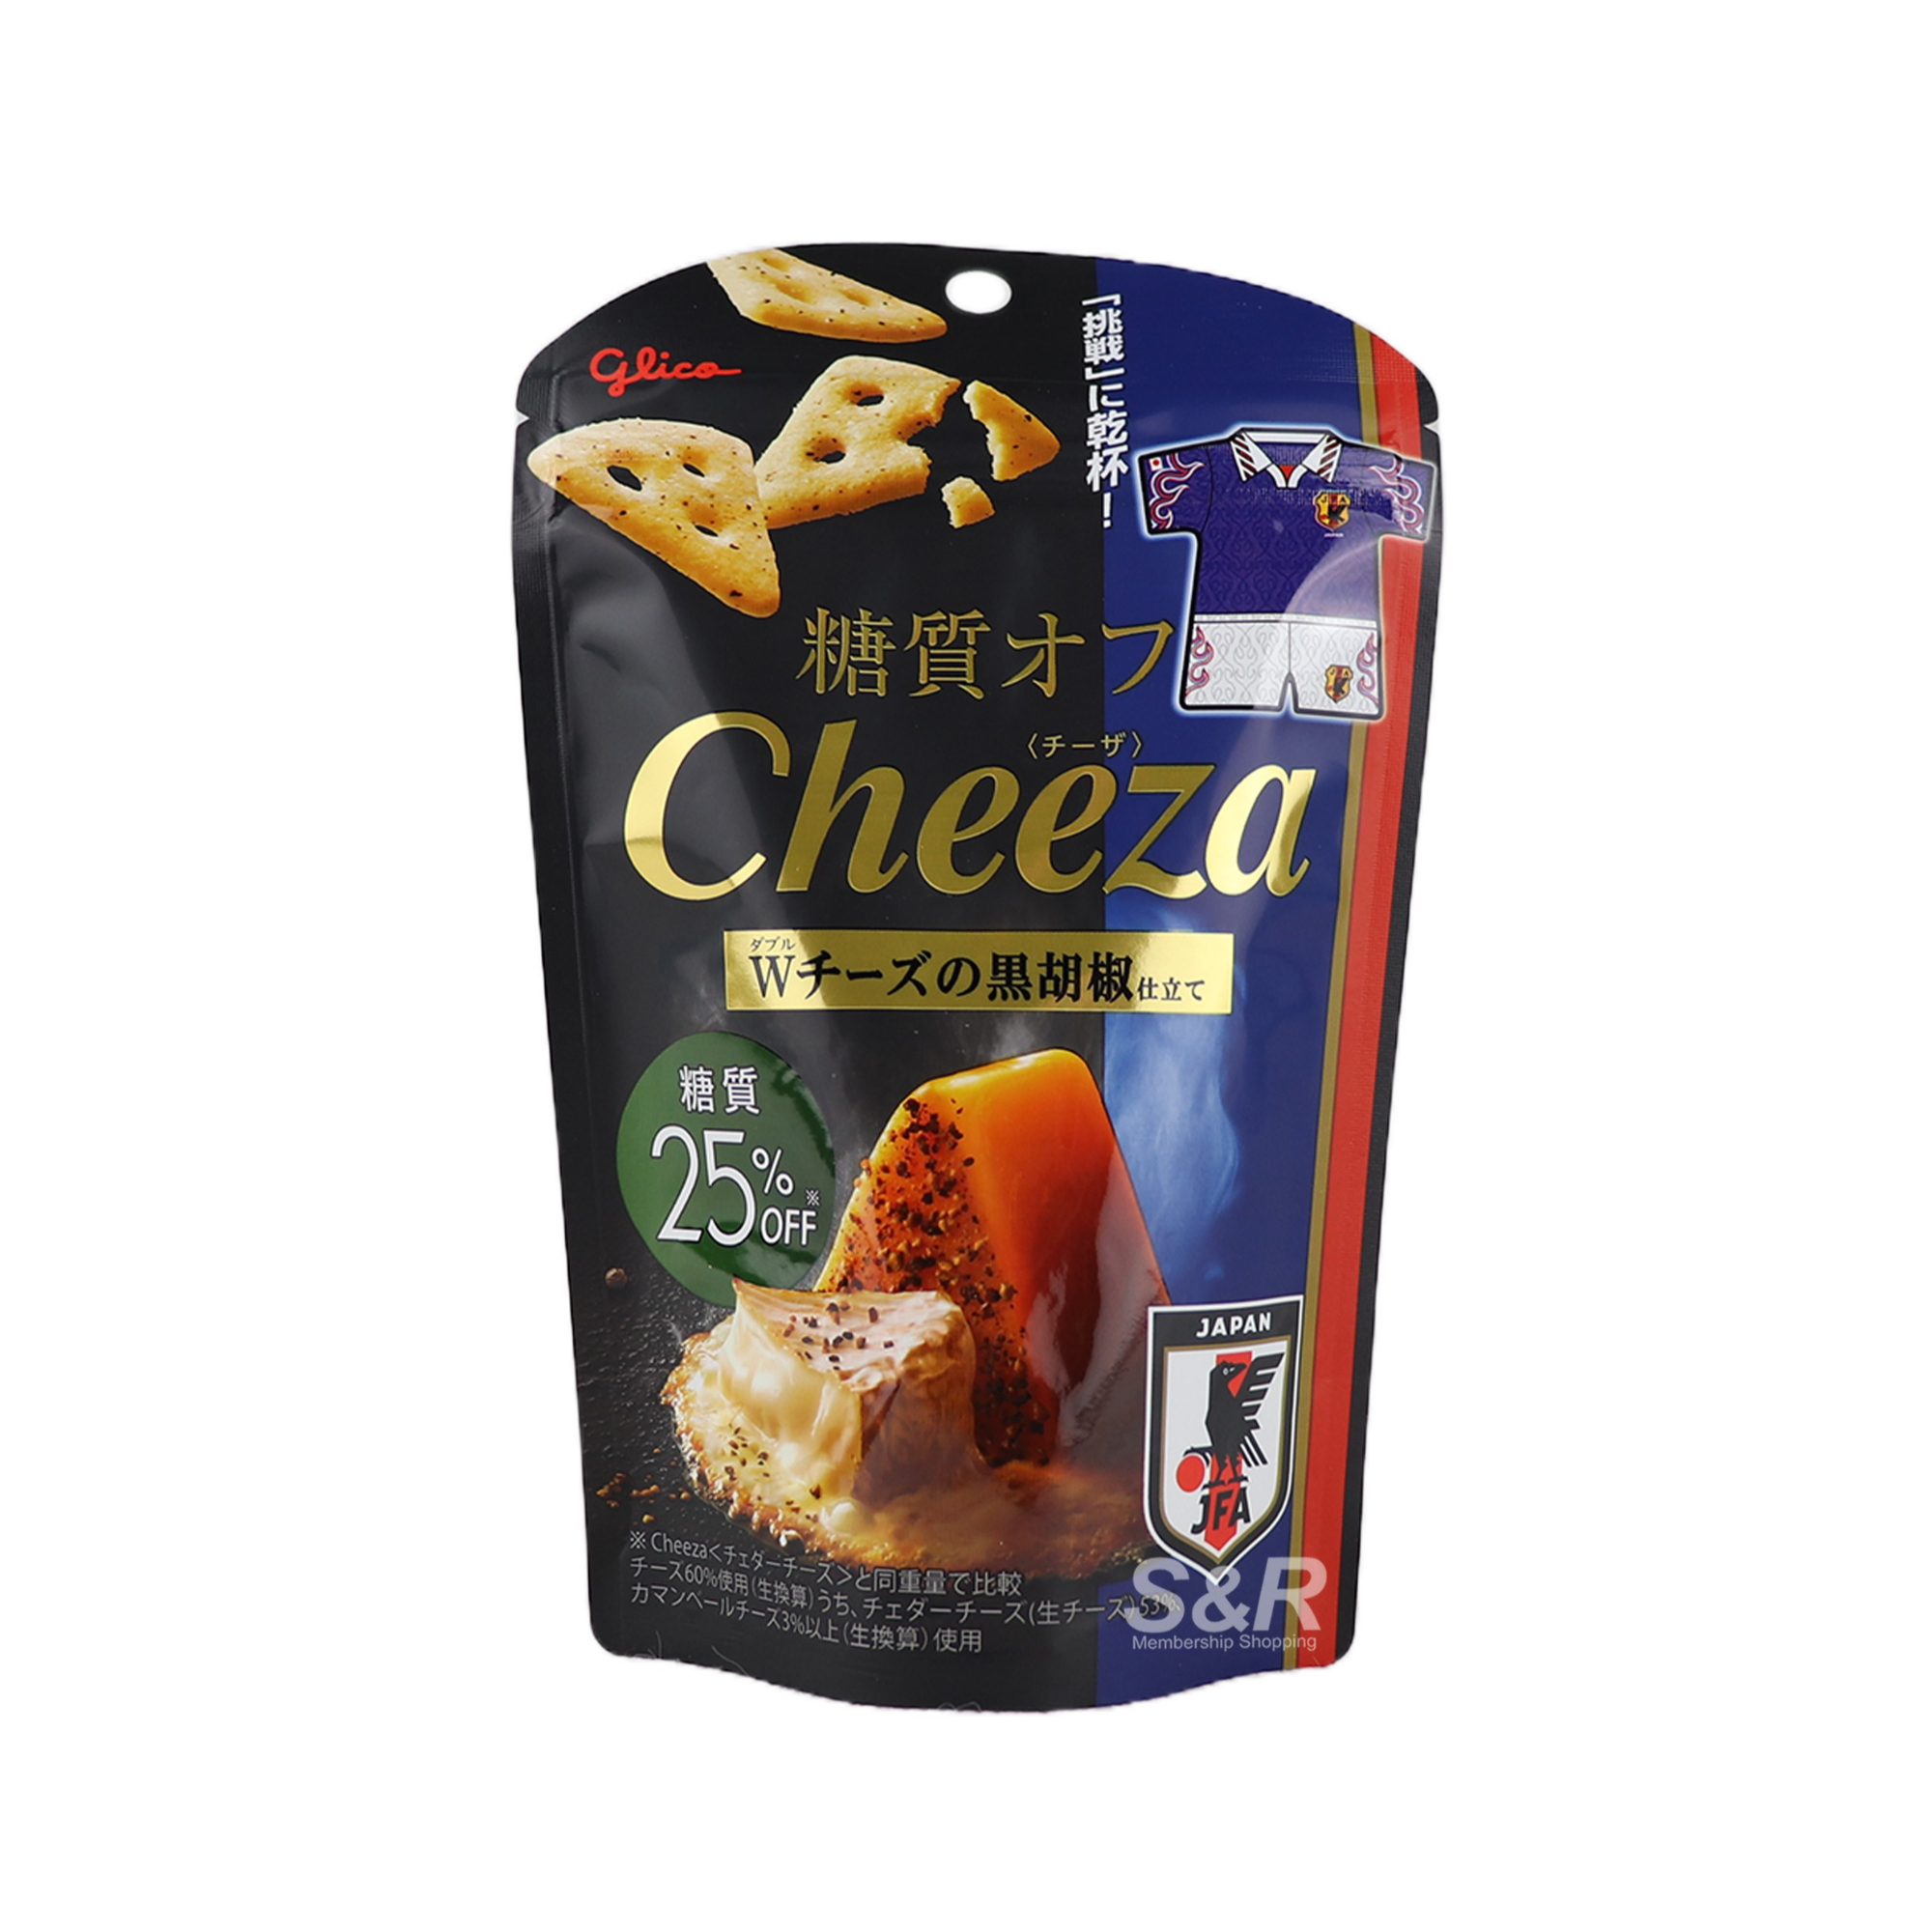 Glico Cheeza Black Pepper Crackers 42g